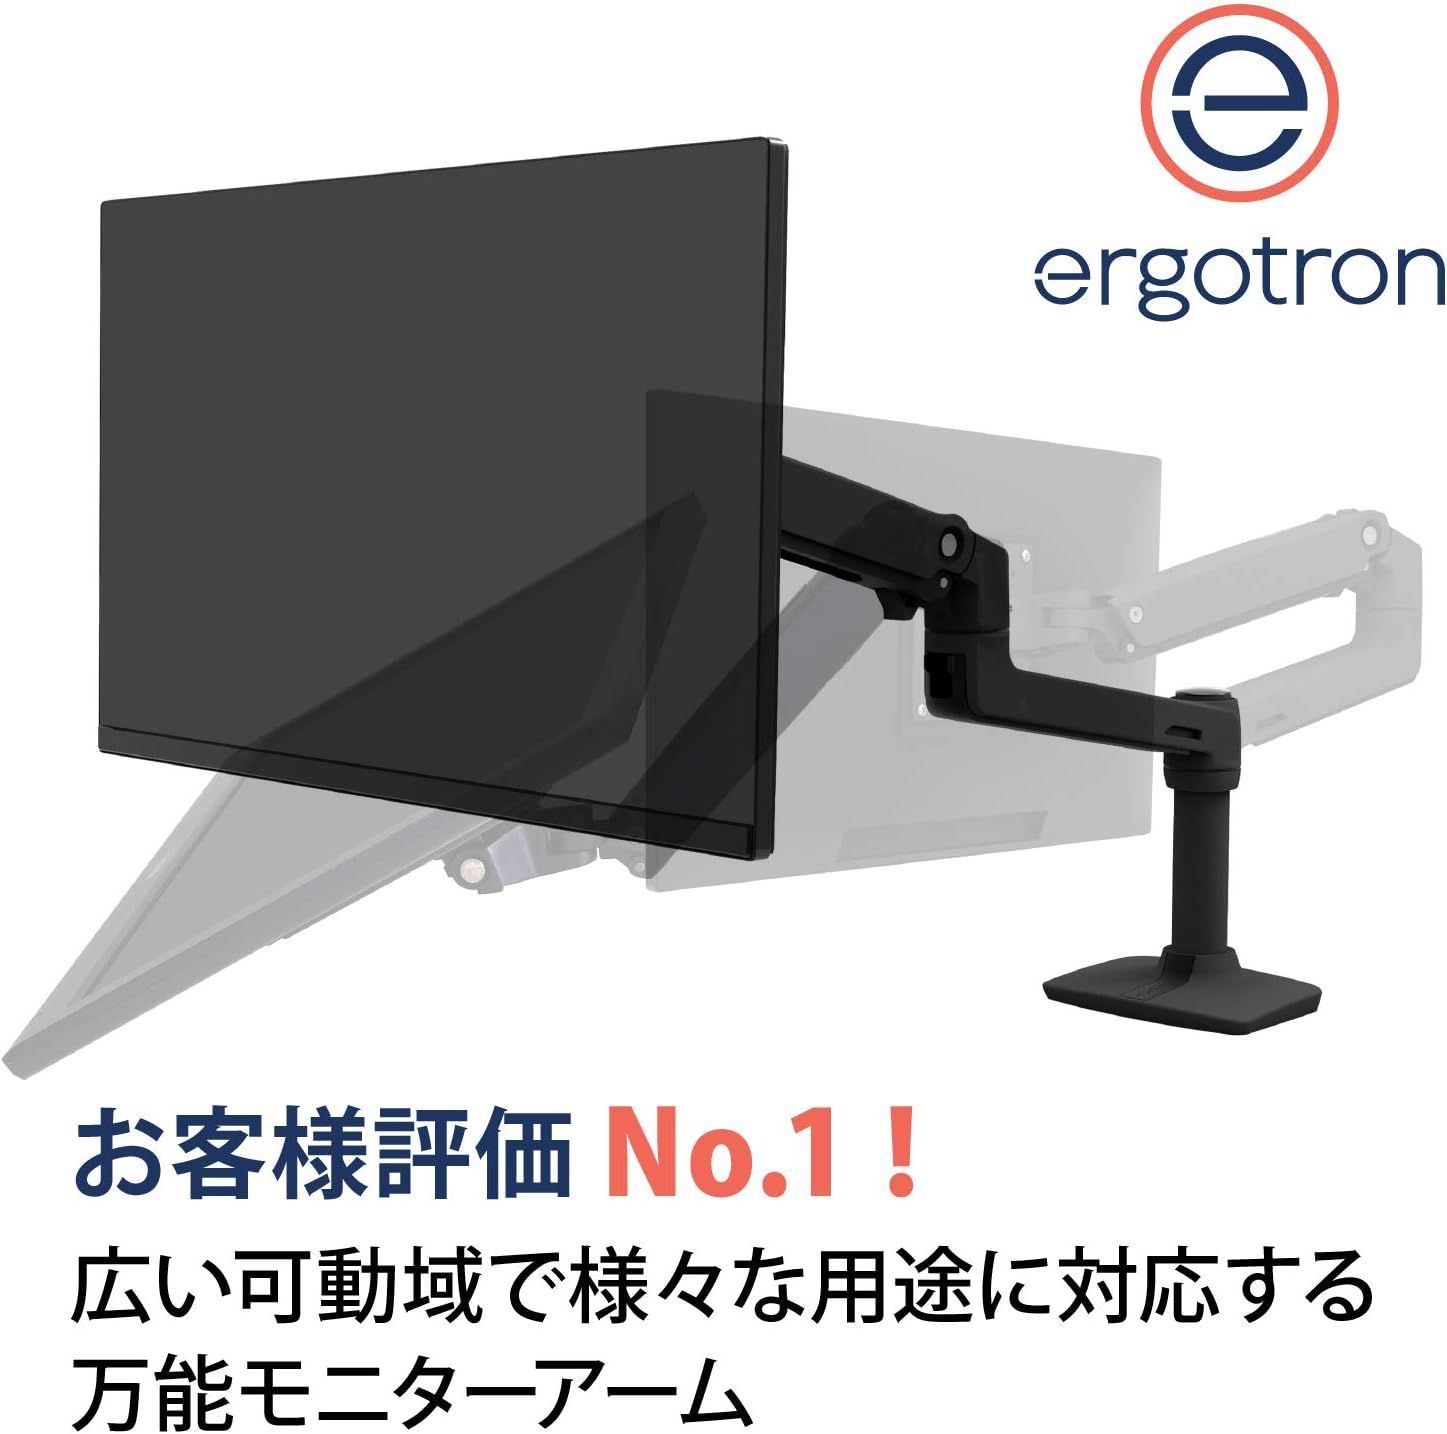 ERGOTRON エルゴトロン LX デスク モニターアーム マットブラック 34